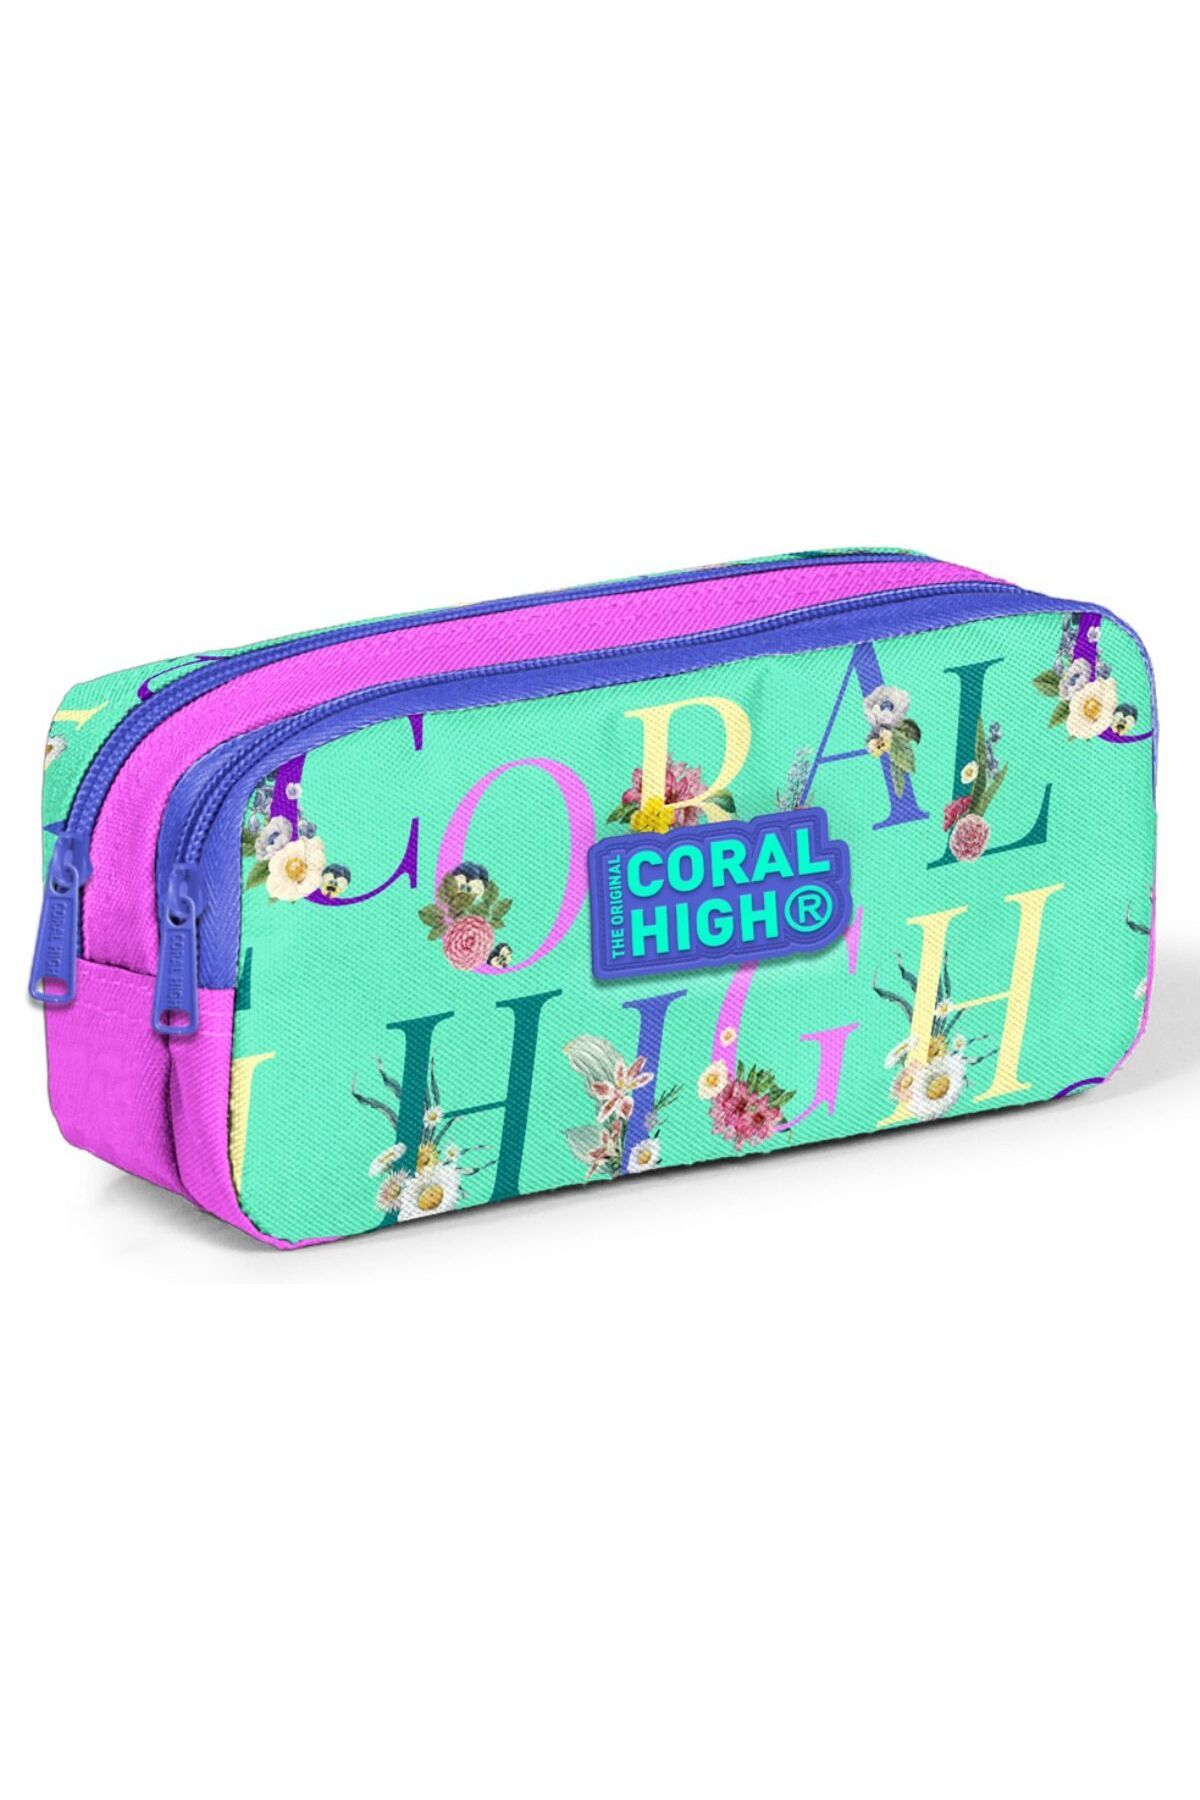 Coral High Iki Bölmeli Kız Çocuk Yeşil Pembe Kalem Çantası Kalemlik